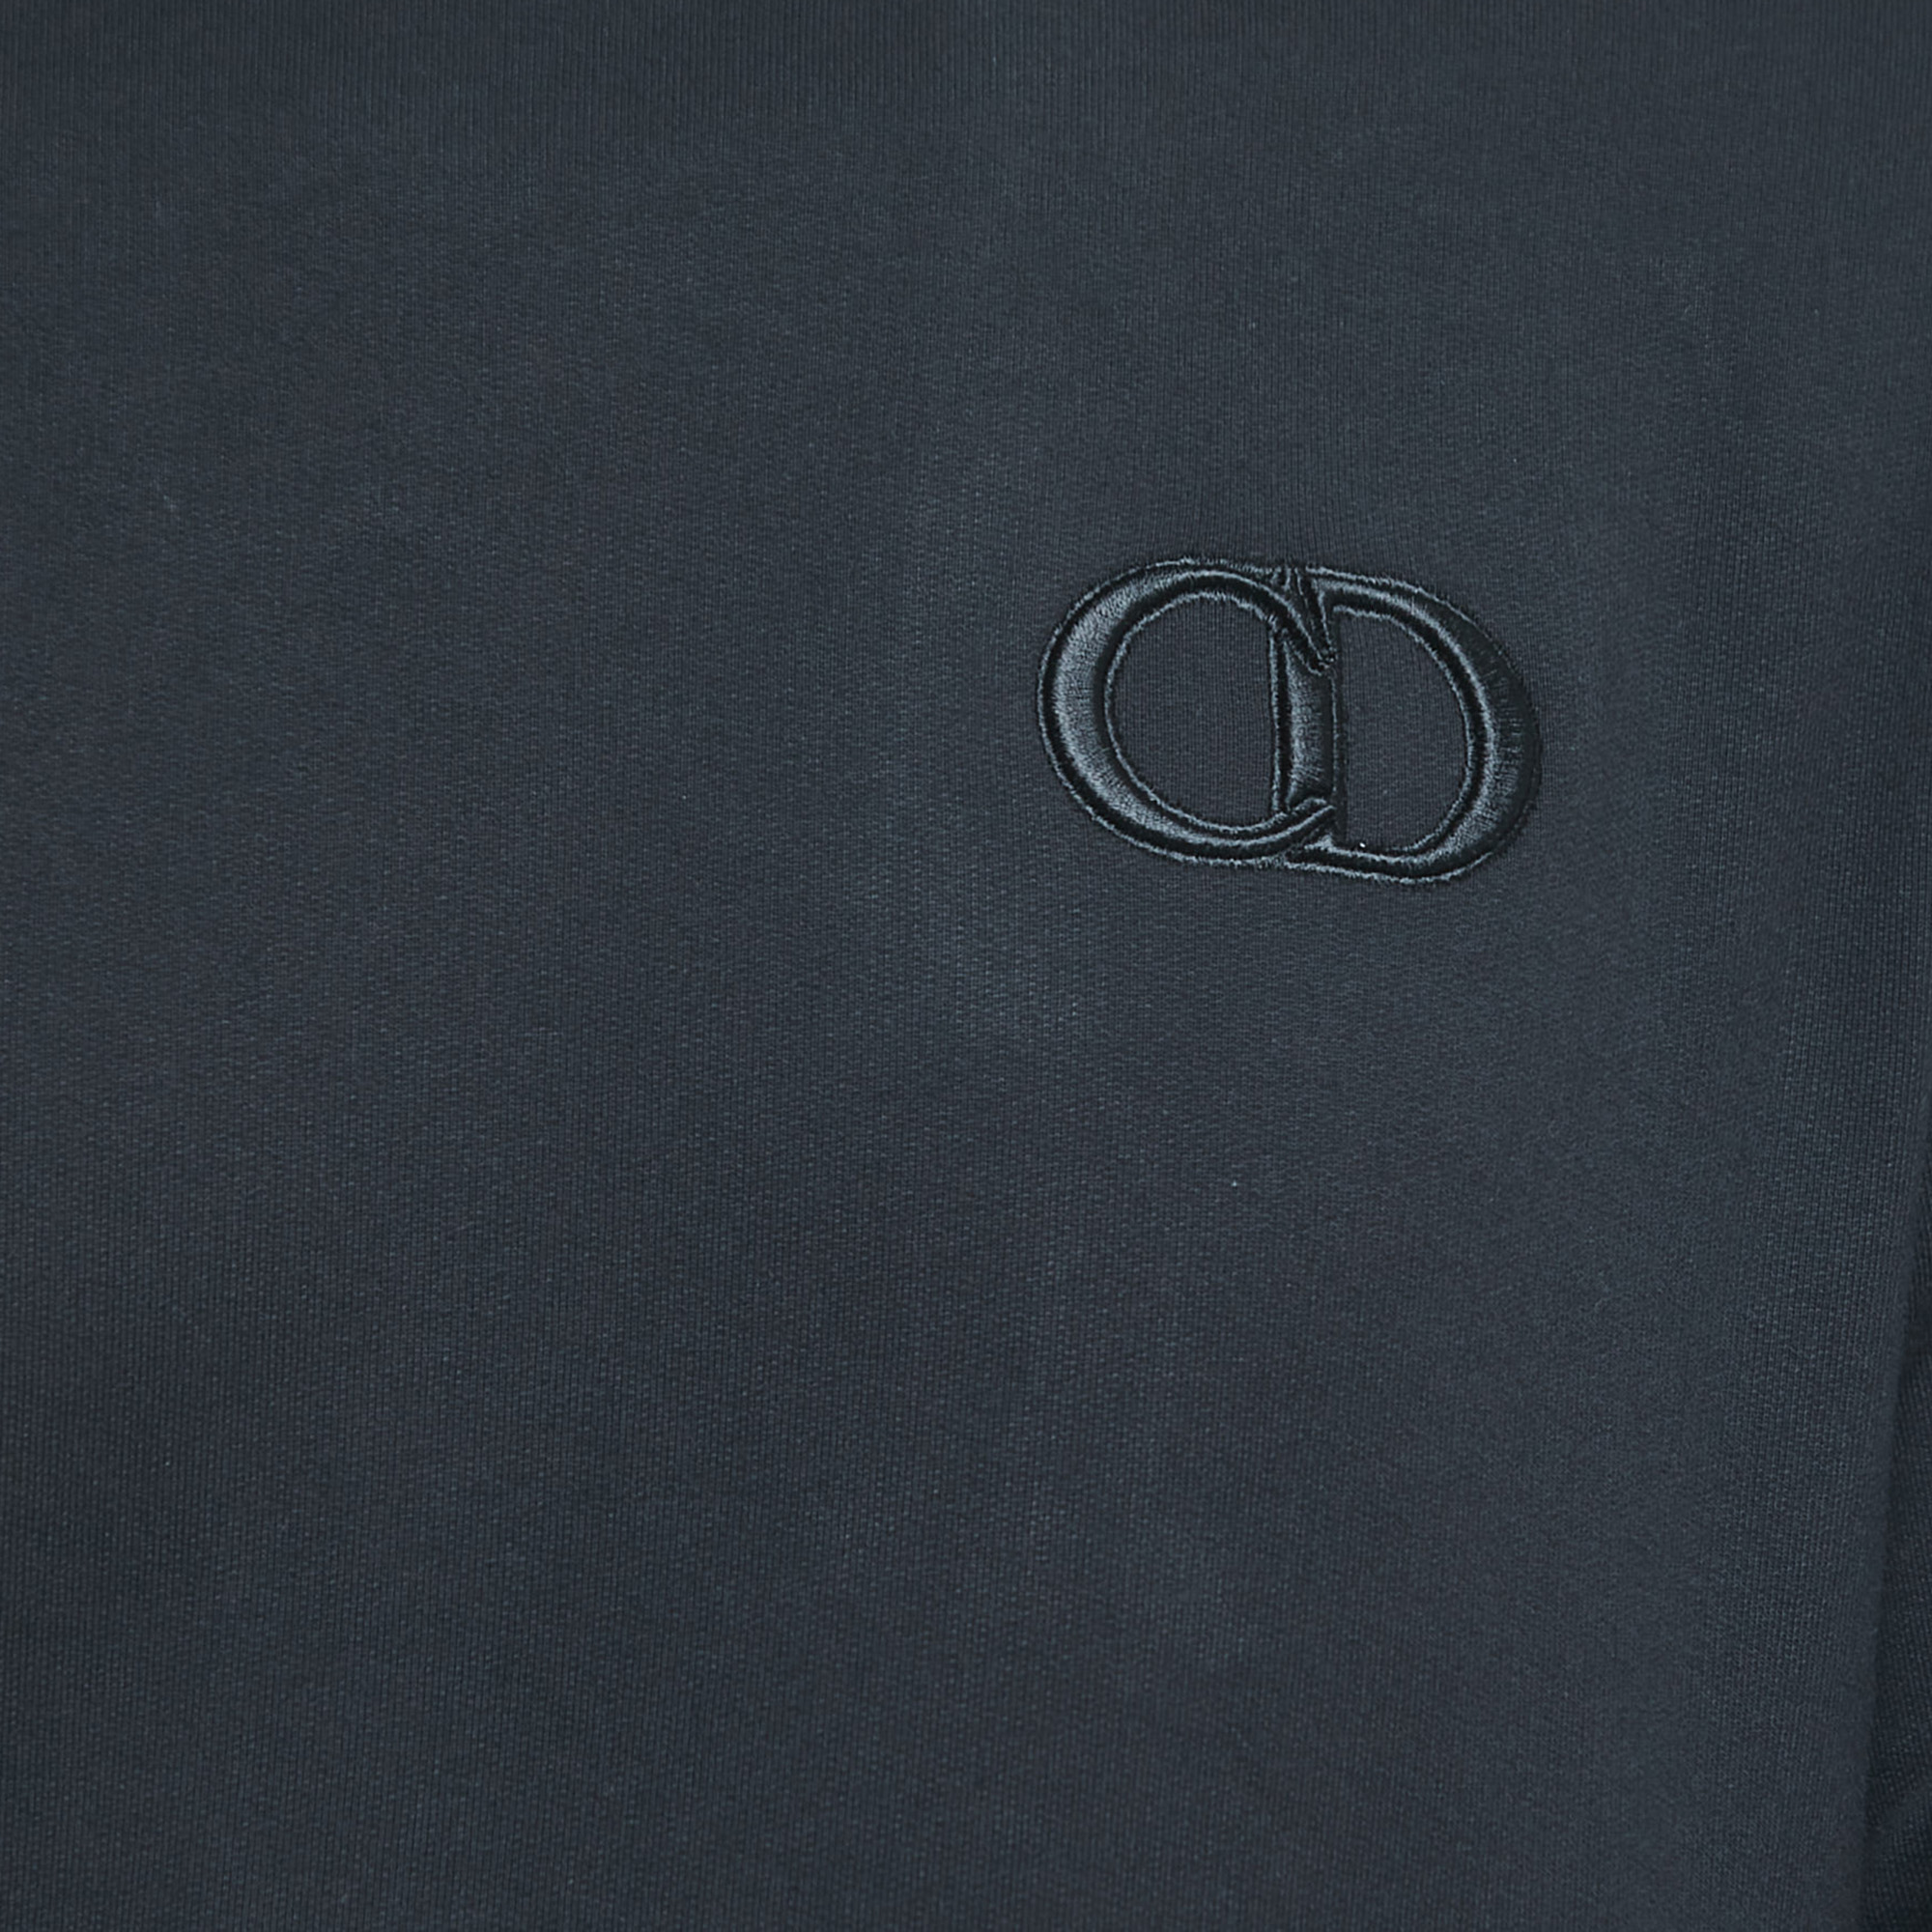 Dior Homme Black Logo Embroidered Cotton Crew Neck Sweatshirt M